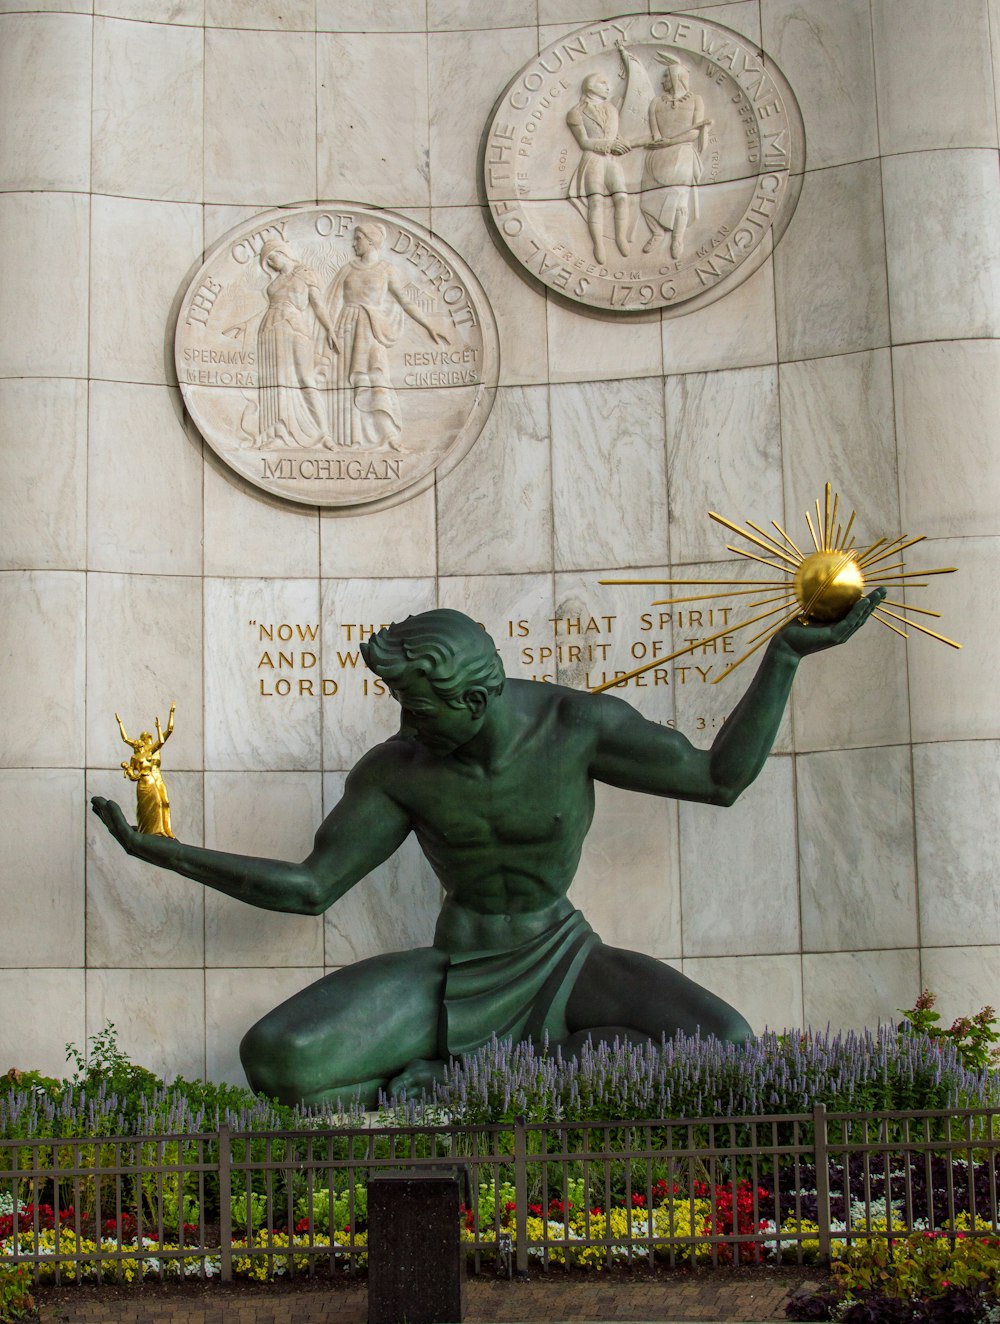 a statue of a man holding a golden ball